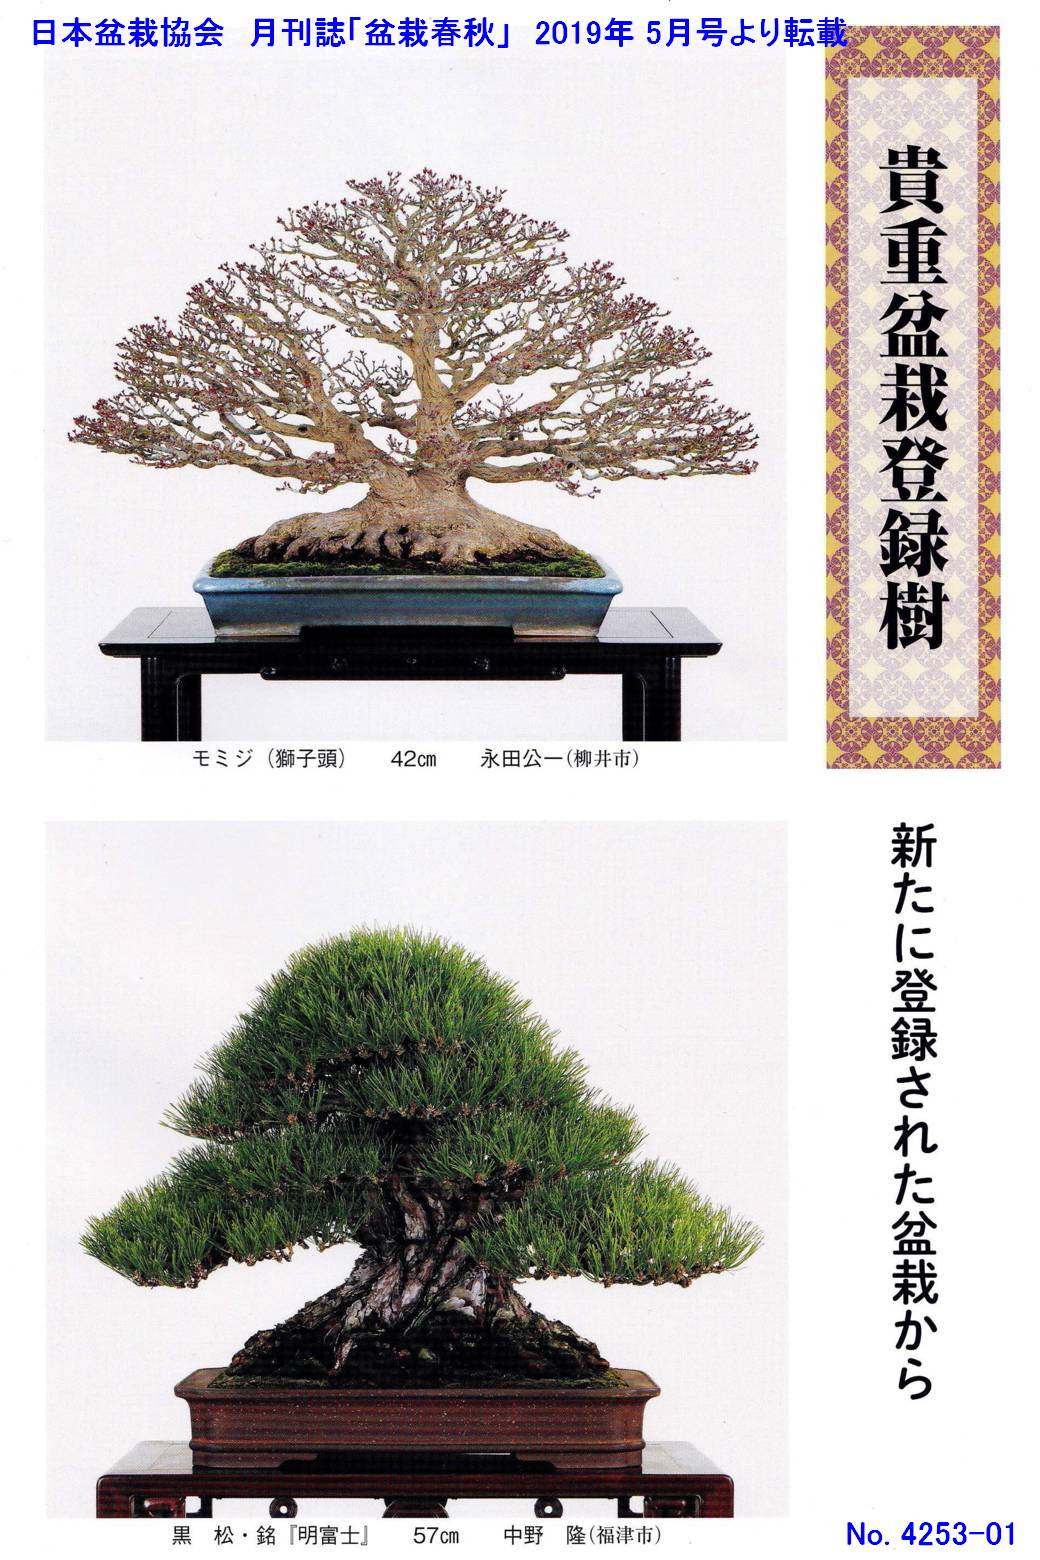 新たな「貴重盆栽登録樹」-1 | 「鶴見陶苑」の盆栽日記 (録)